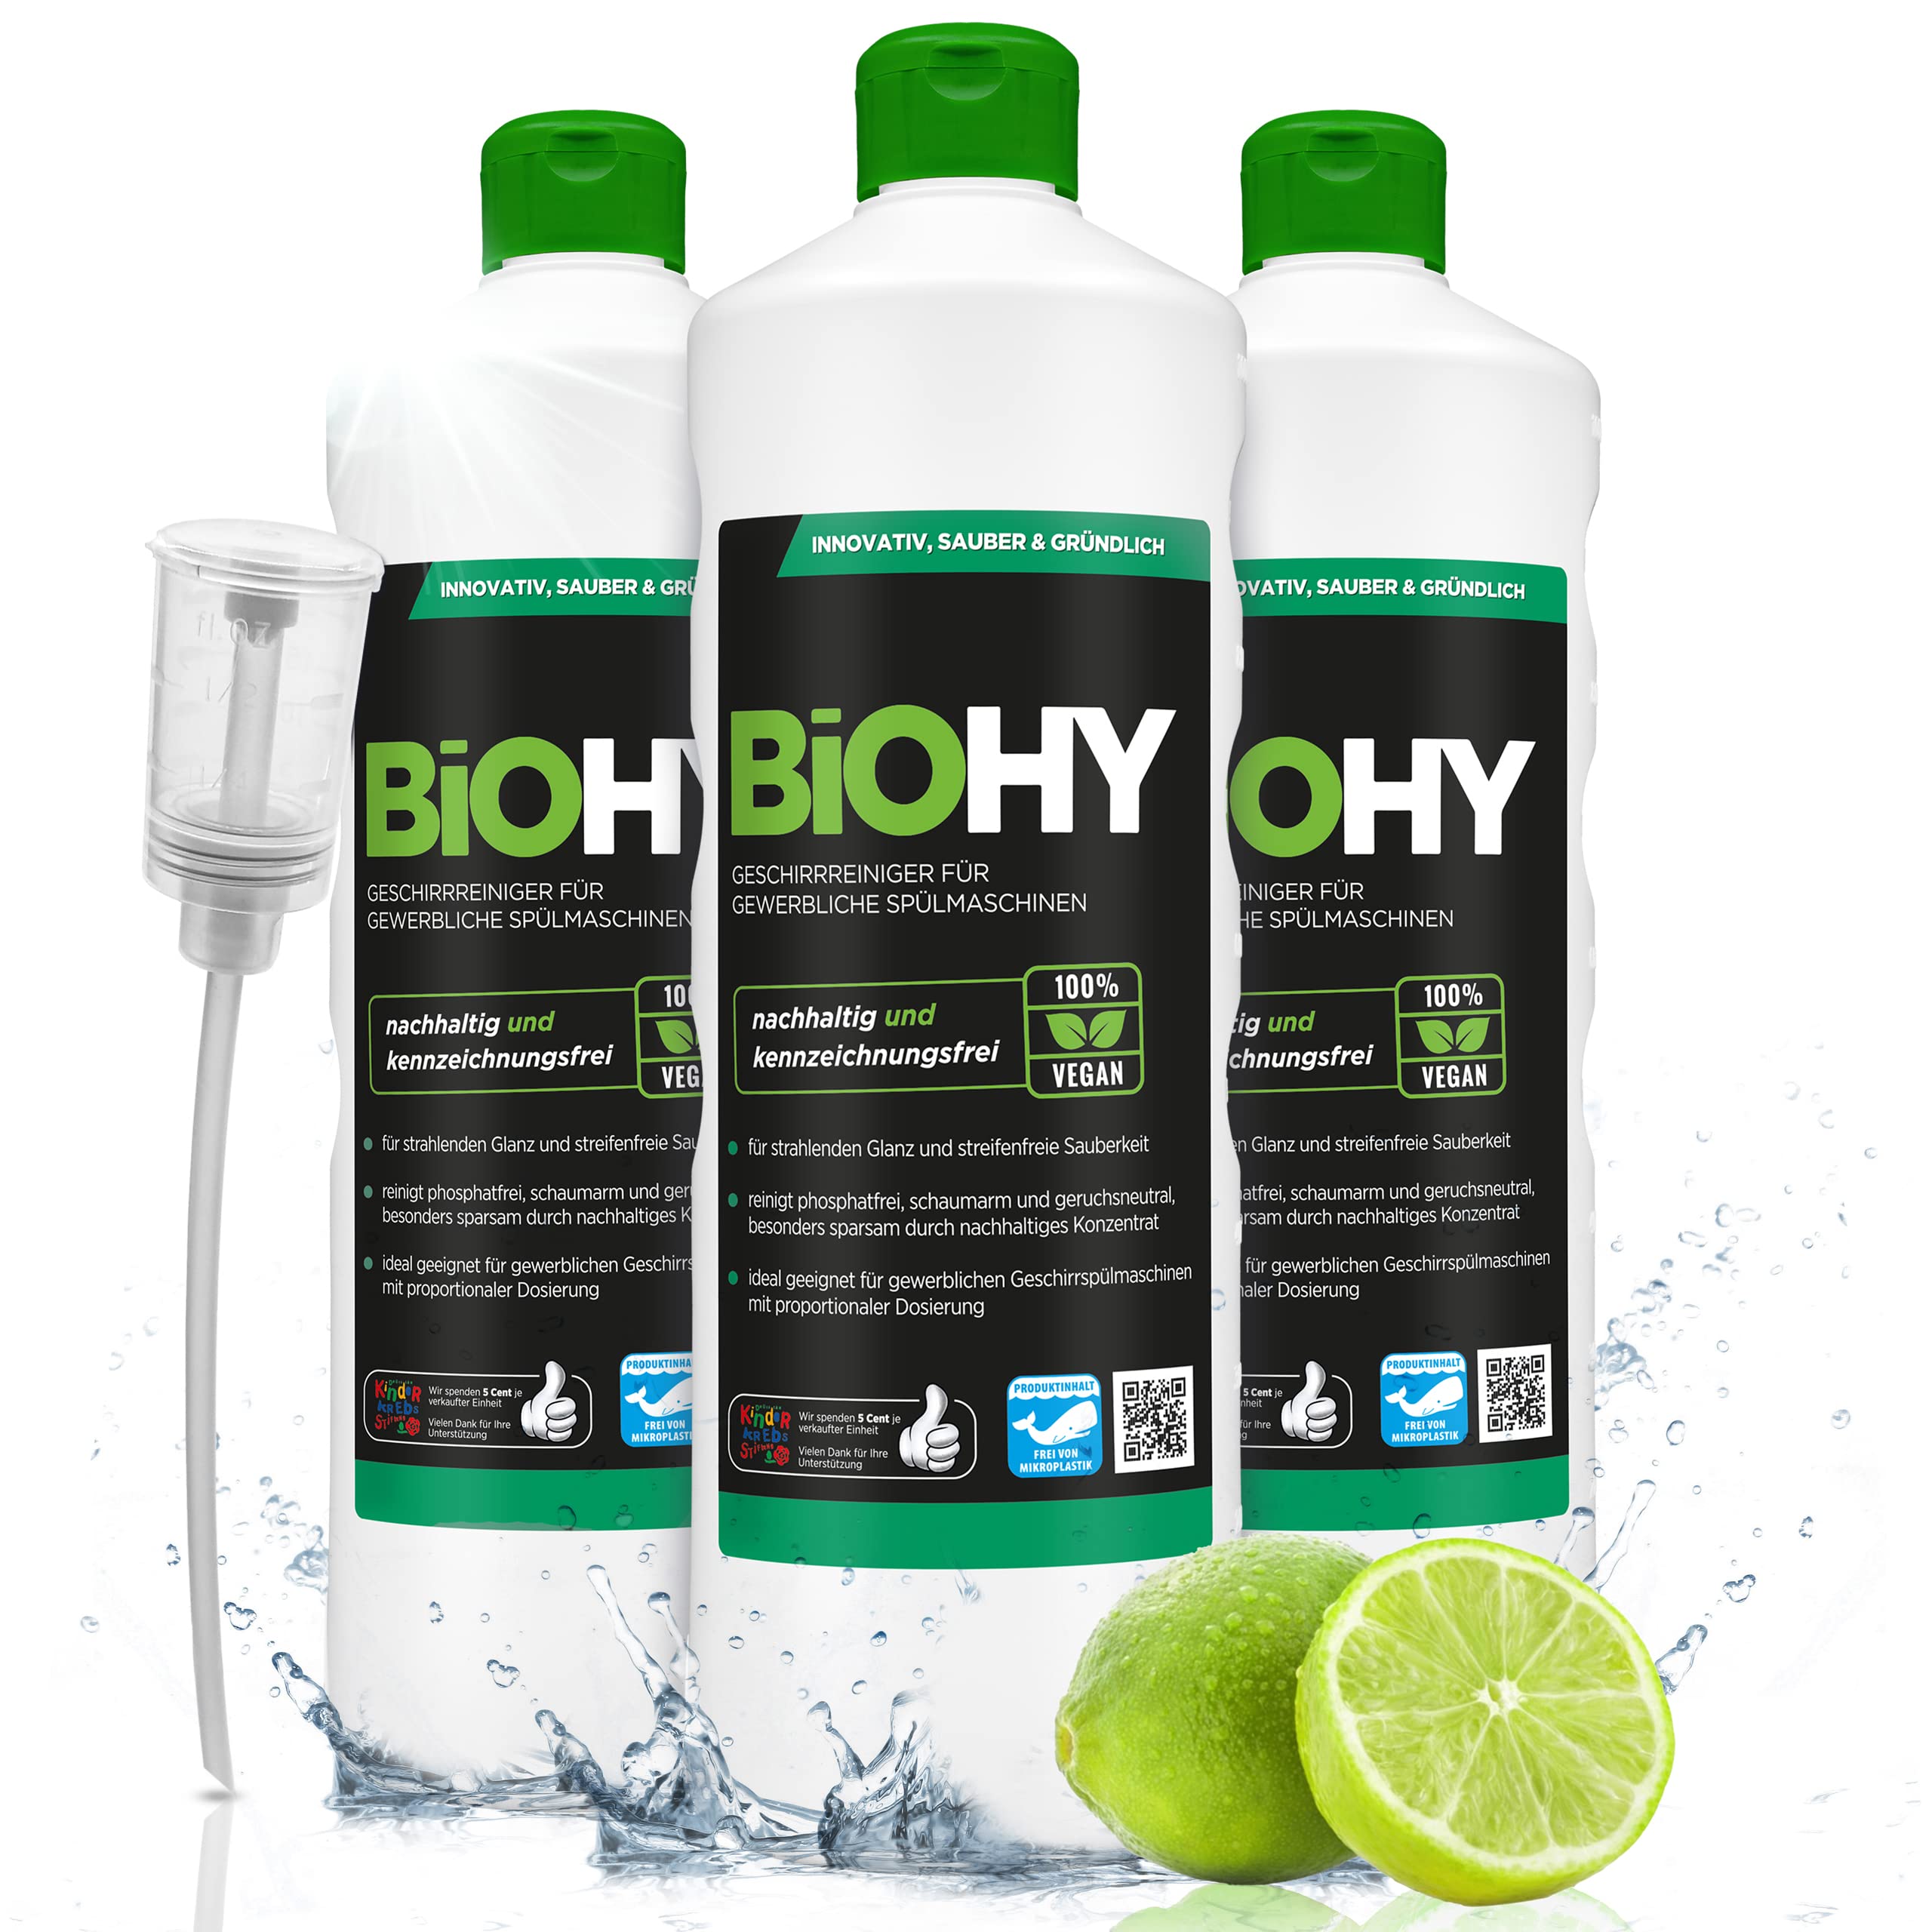 BiOHY Geschirrreiniger für gewerbliche Spülmaschinen (3 x 1 Liter) + Dosierer | Maschinenspülmittel für Geschirr |ergiebig, flüssig & phosphatfrei | für Gastro & Gewerbe | Spülmaschinenreiniger